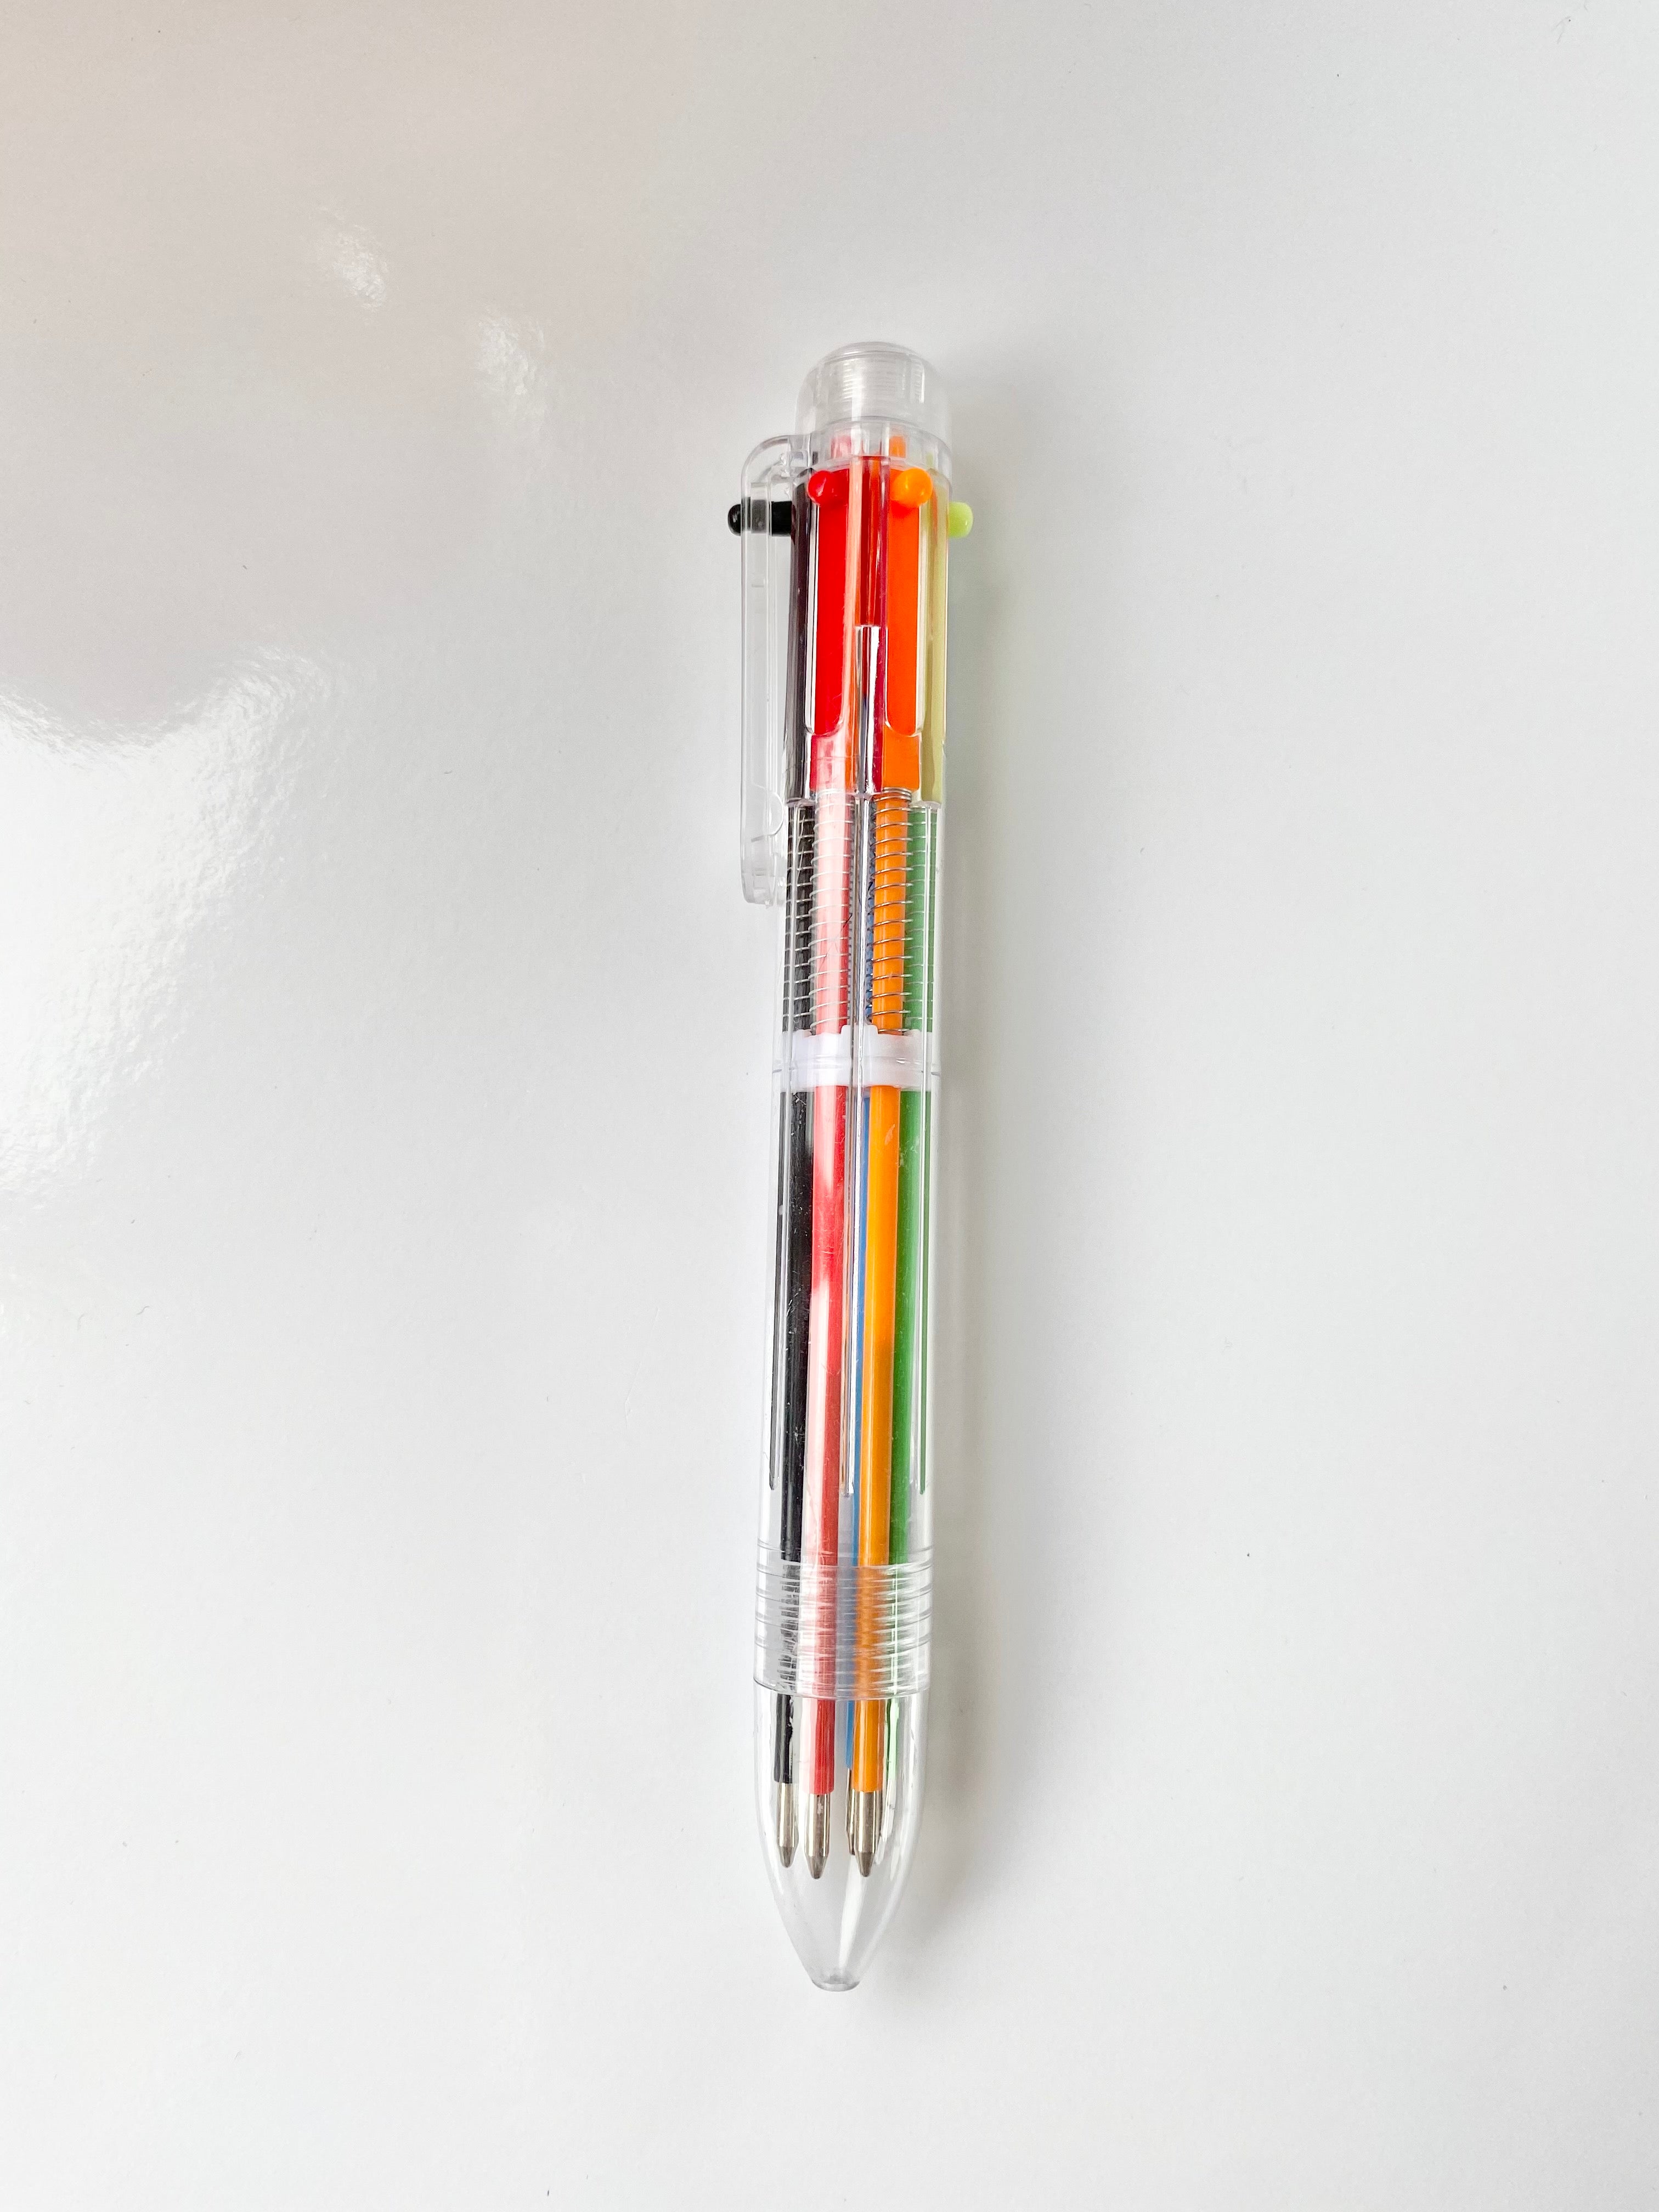 Vintage 90's Multi Color Pen